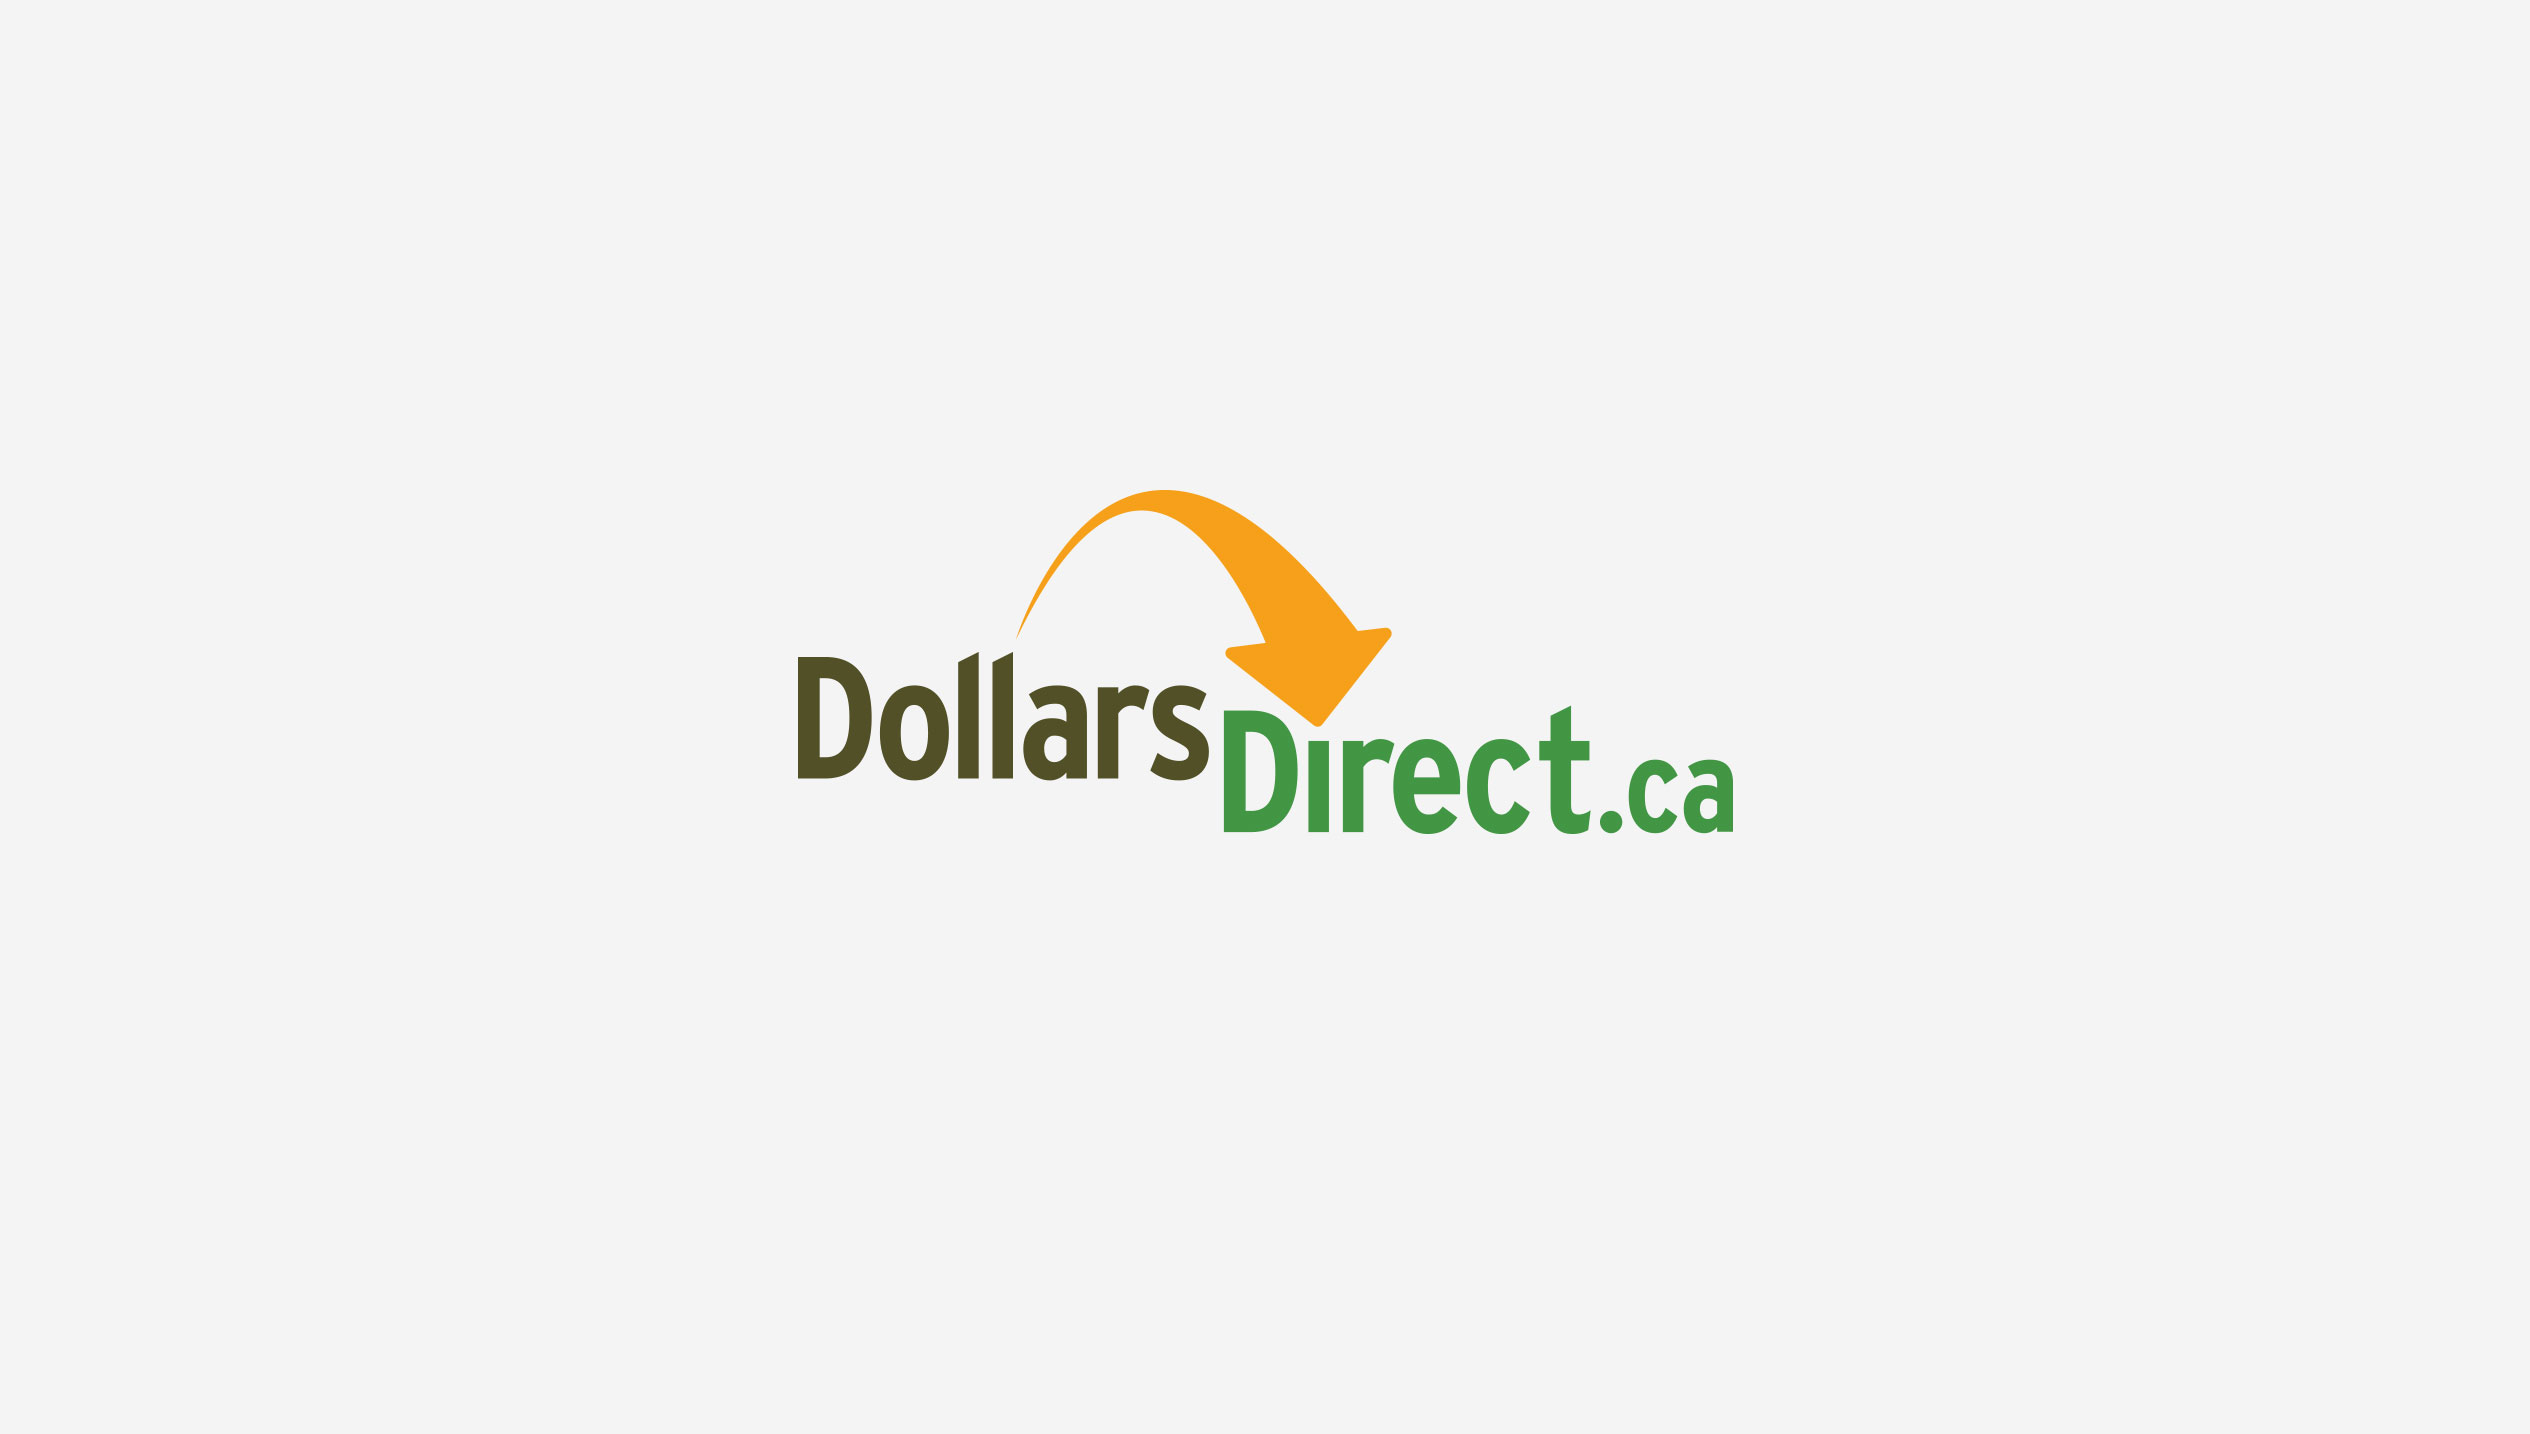 Dollars Direct